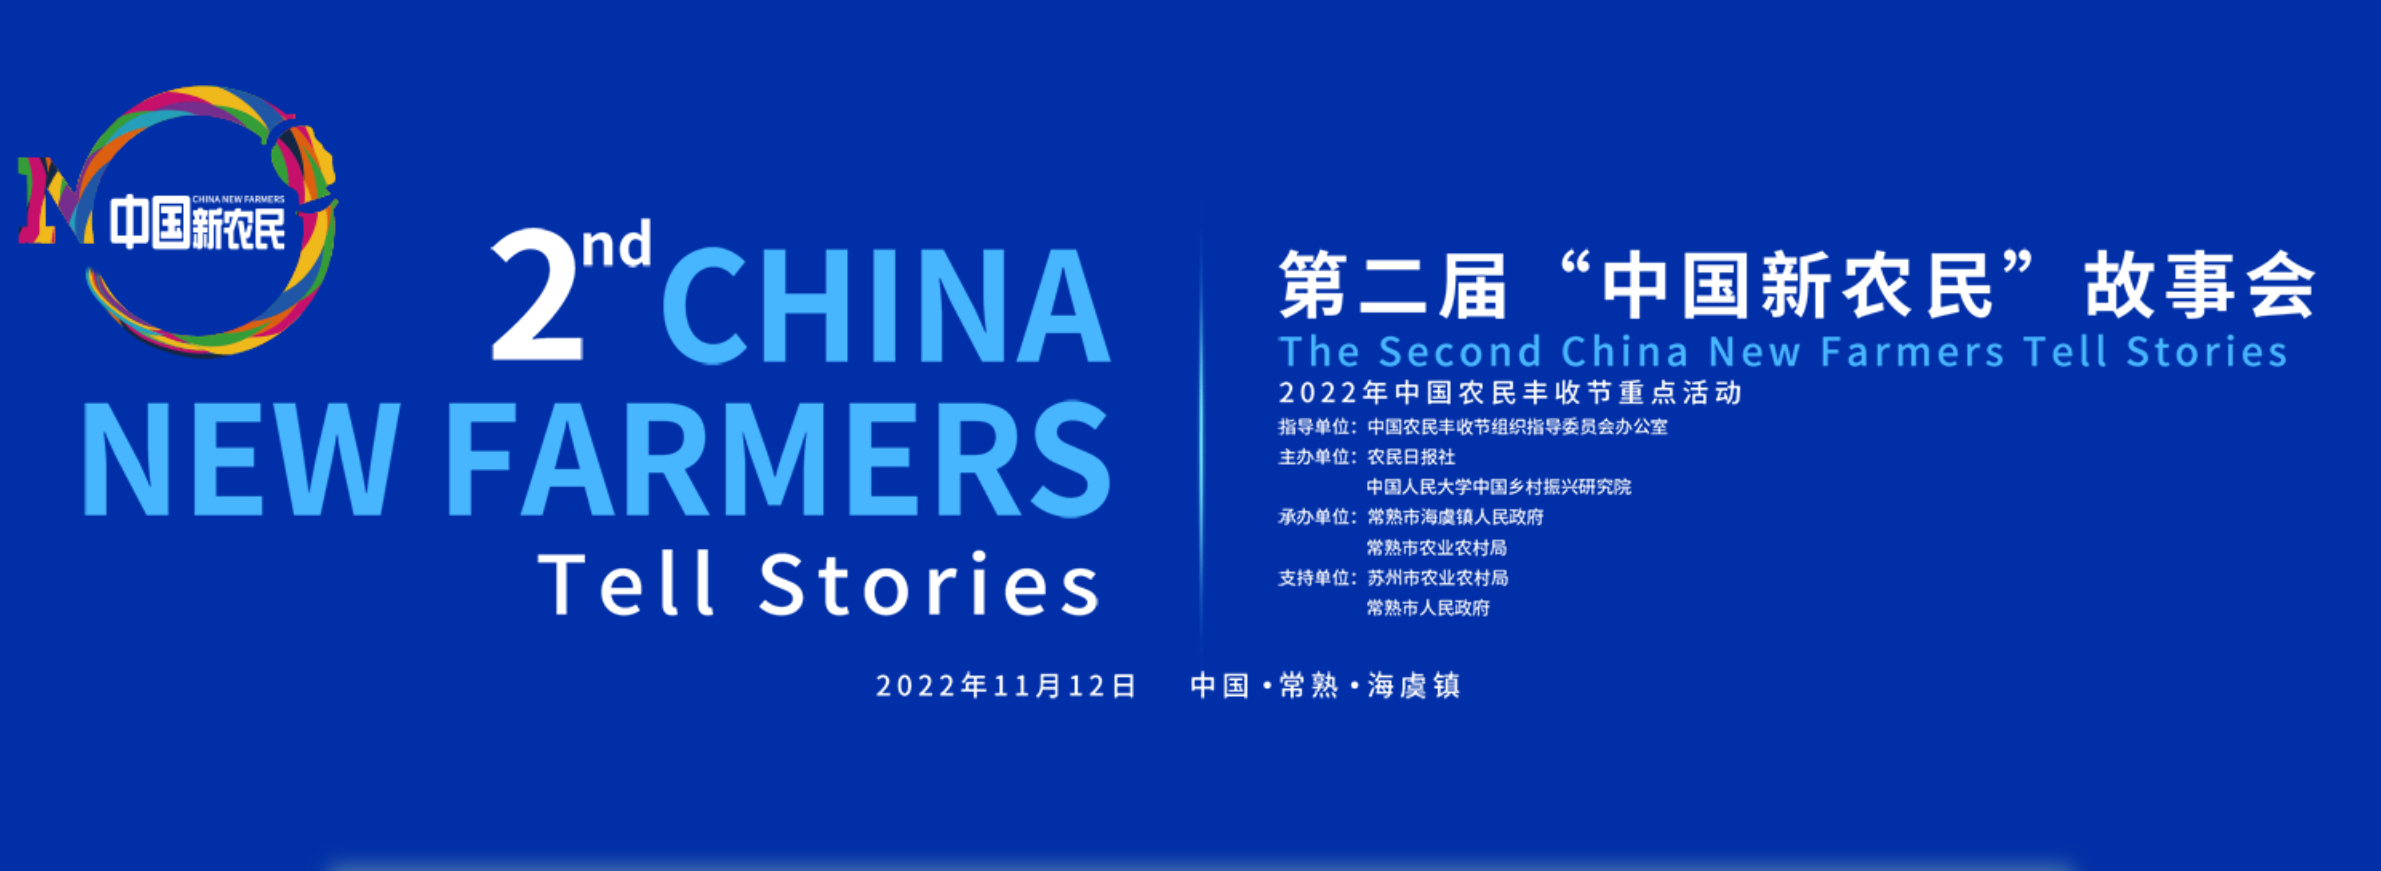 第二届“中国新农民”故事会